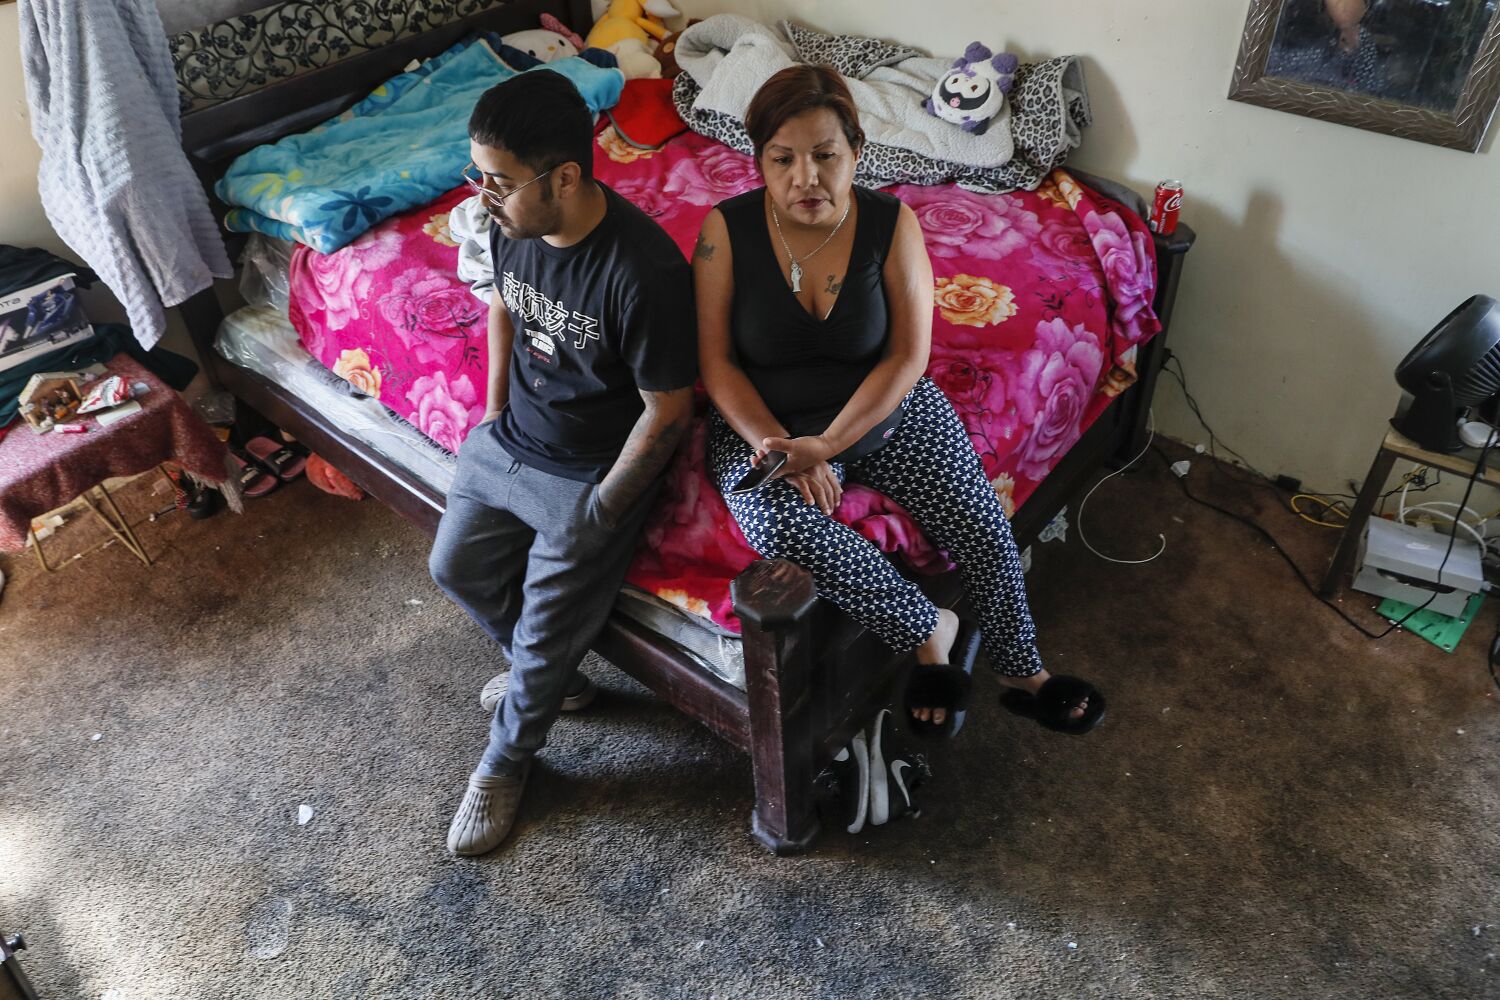 Poor housing conditions continue at L.A. apartment complex, despite 2,000 citations